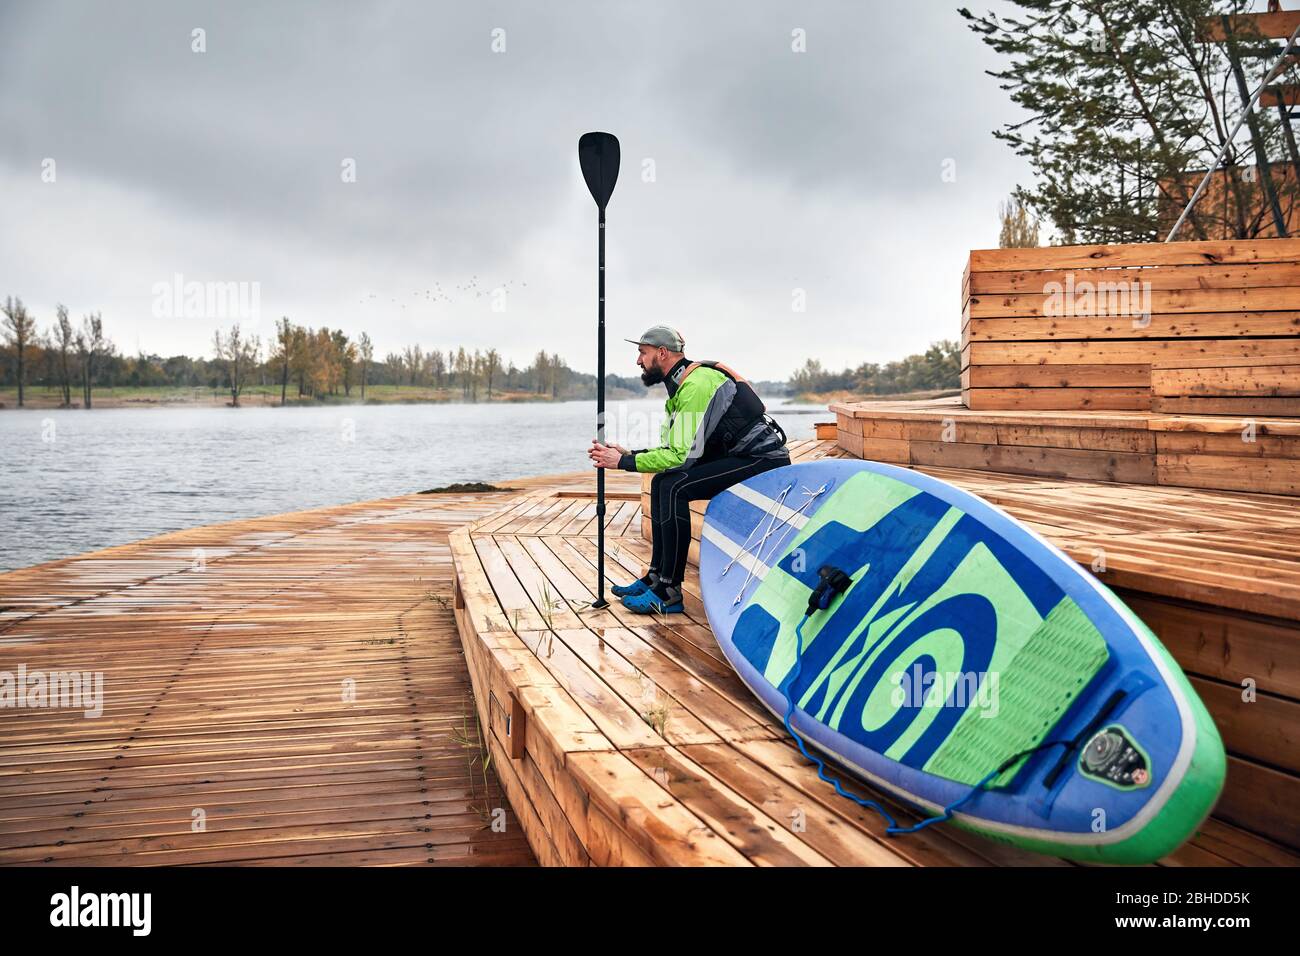 Atleta de neopreno con paddle surf y sentado en el muelle de madera cerca del lago Foto de stock